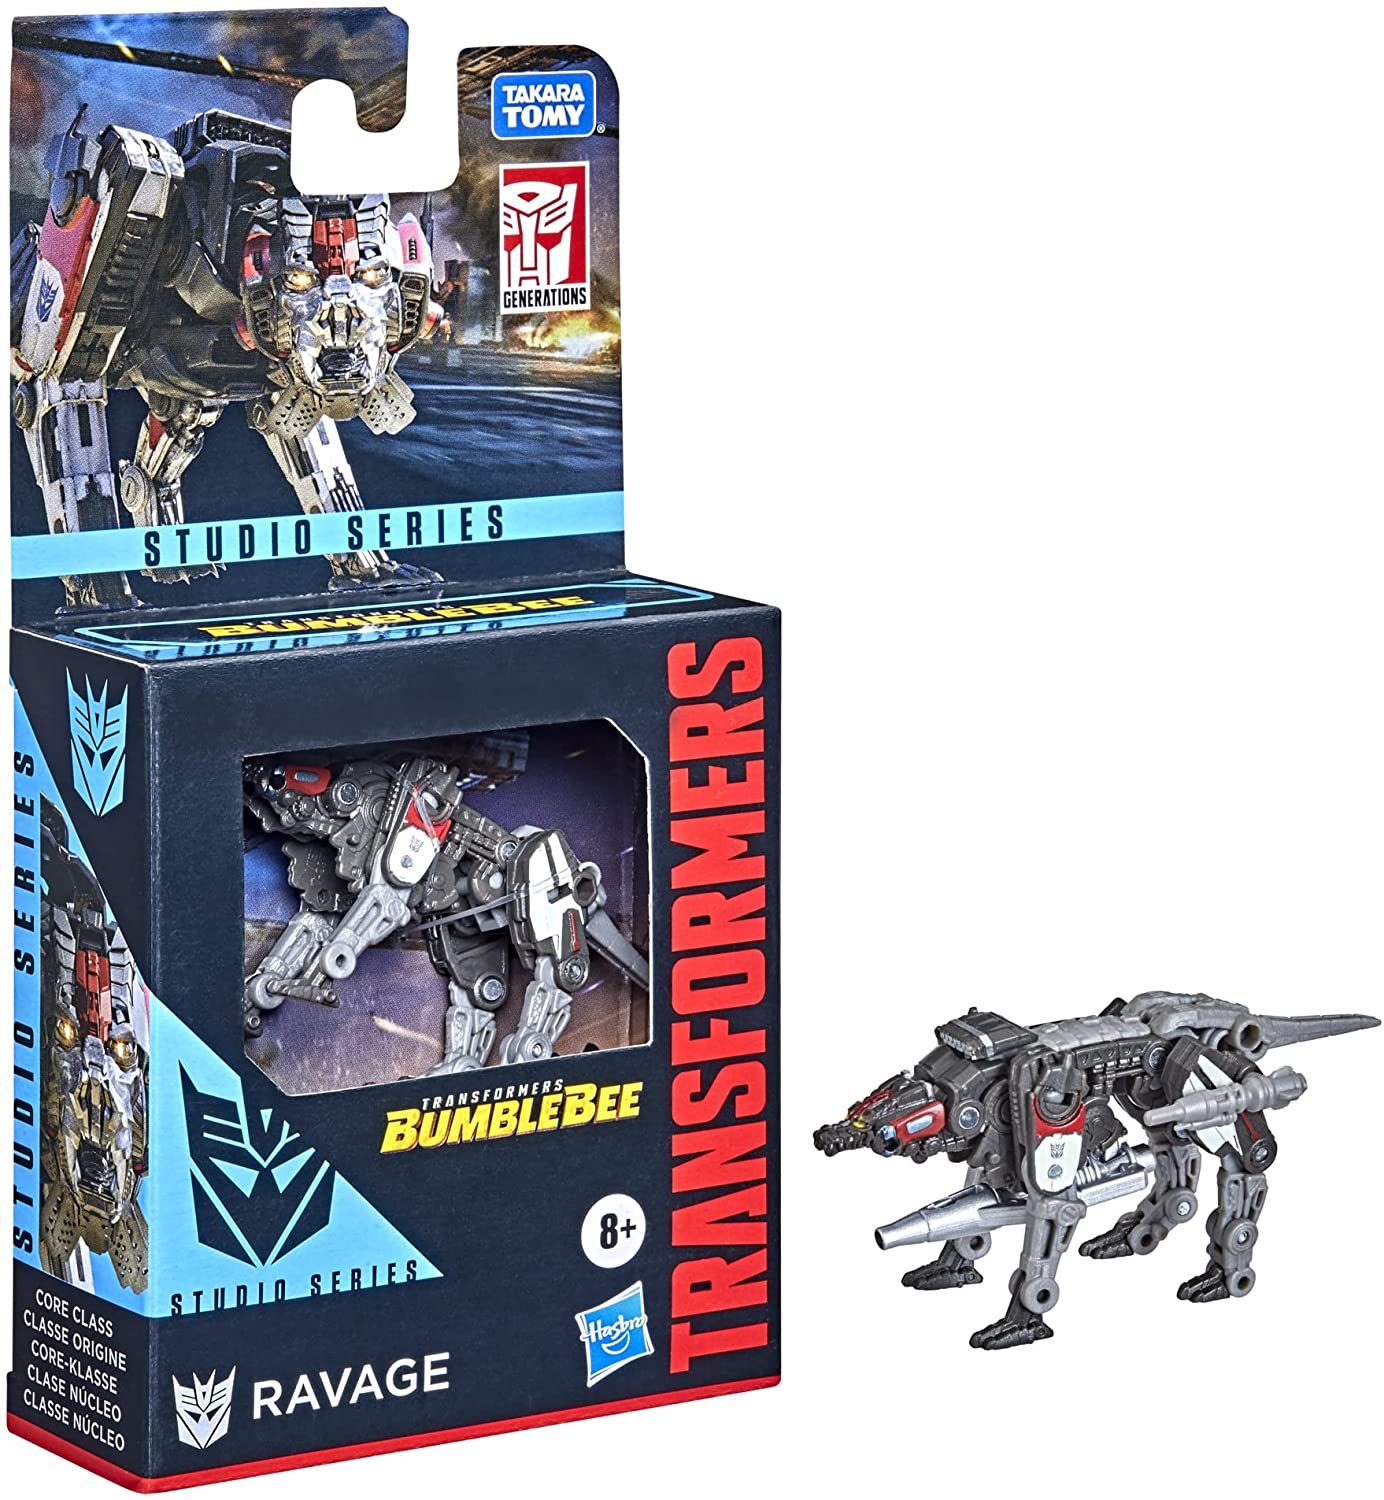 Transformers Studio Series Bumblebee: Ravage